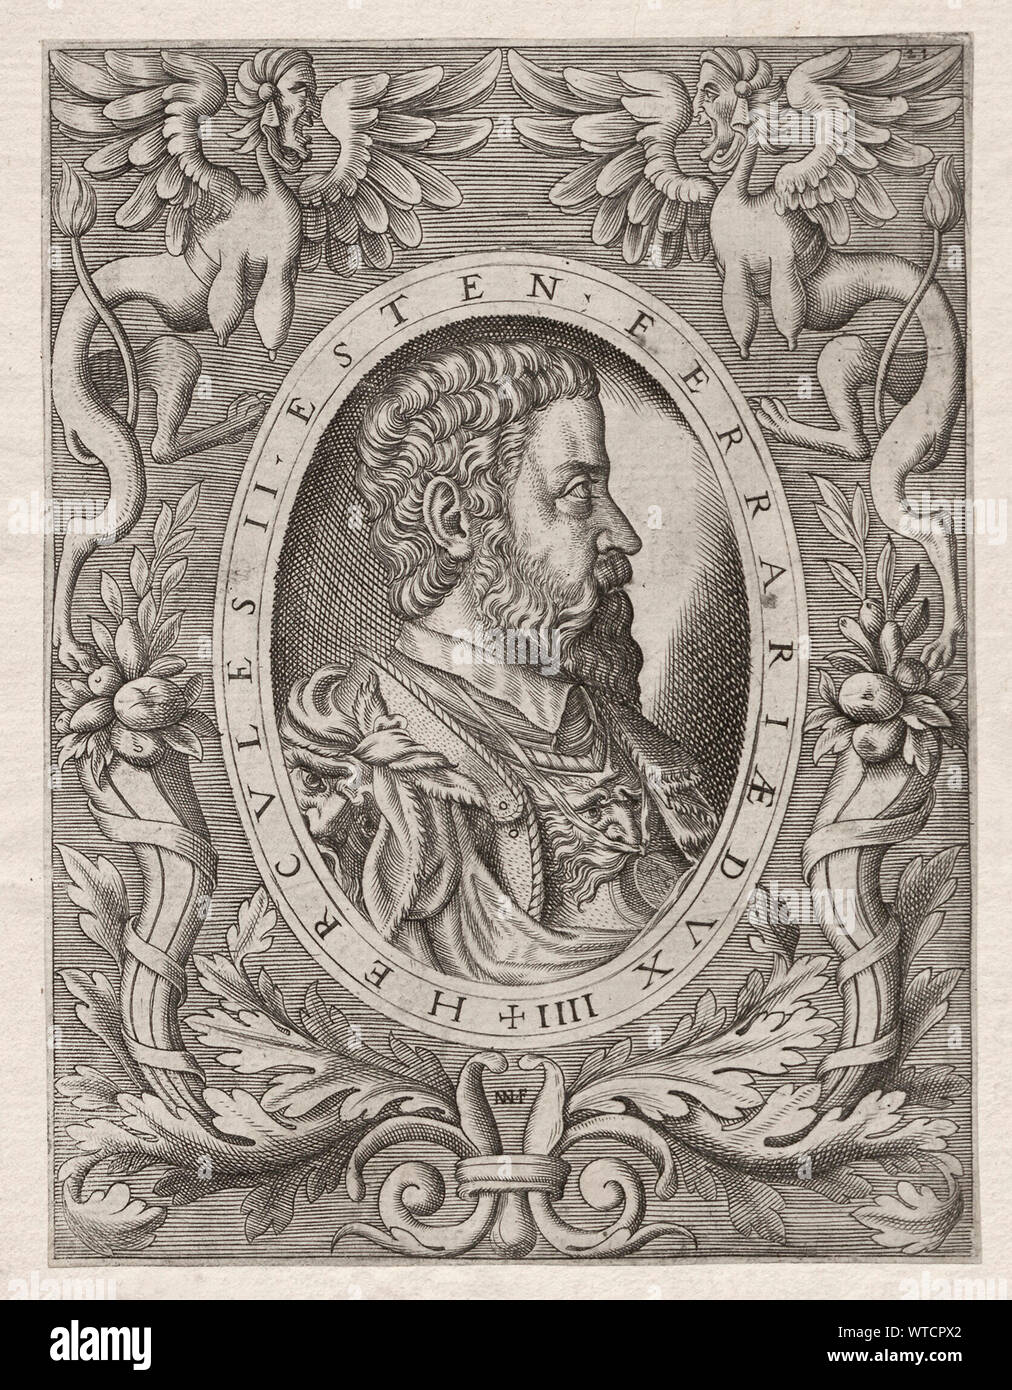 Ercole (Hèrcules) II d'Este (1508 - 1559) fu il duca di Ferrara, Modena e Reggio da 1534 a 1559. Egli era il figlio maggiore di Alfonso I d'Este e Lucr Foto Stock